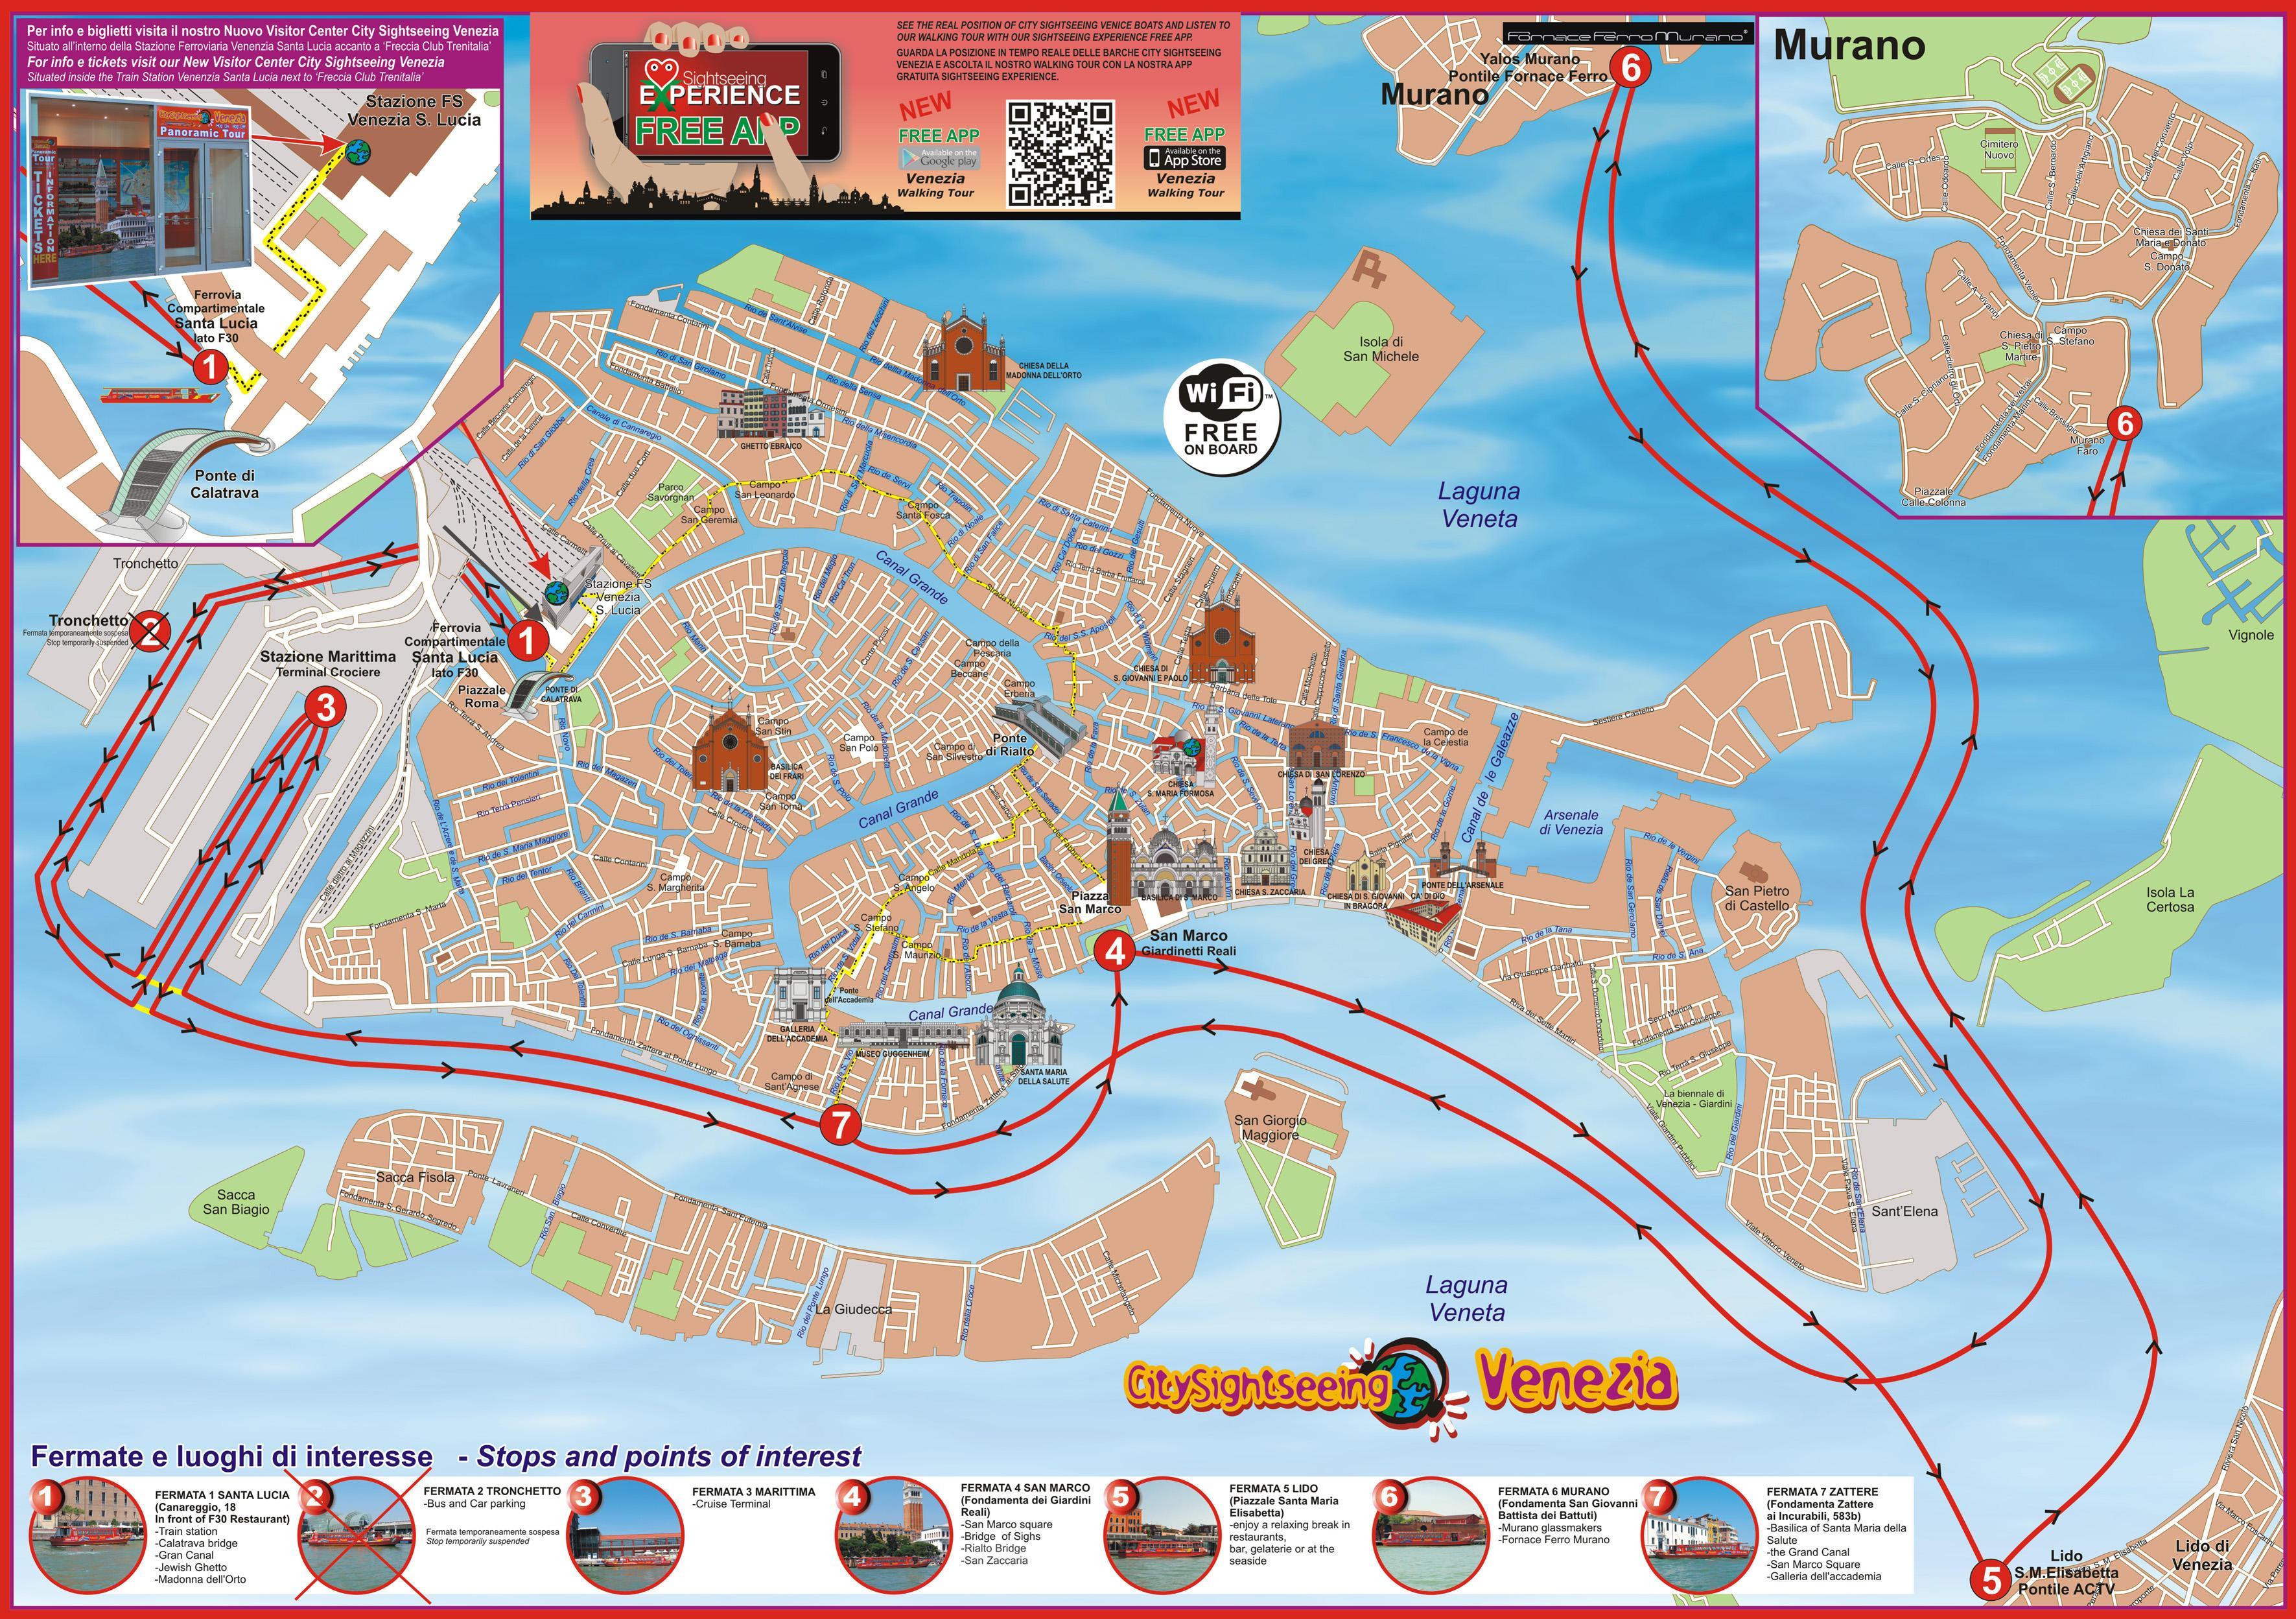 venetsia kartta nähtävyydet Kaupungin Nahtavyydet Venetsia Kartta Venetsia Italia Nahtavyydet Kartta Italia venetsia kartta nähtävyydet